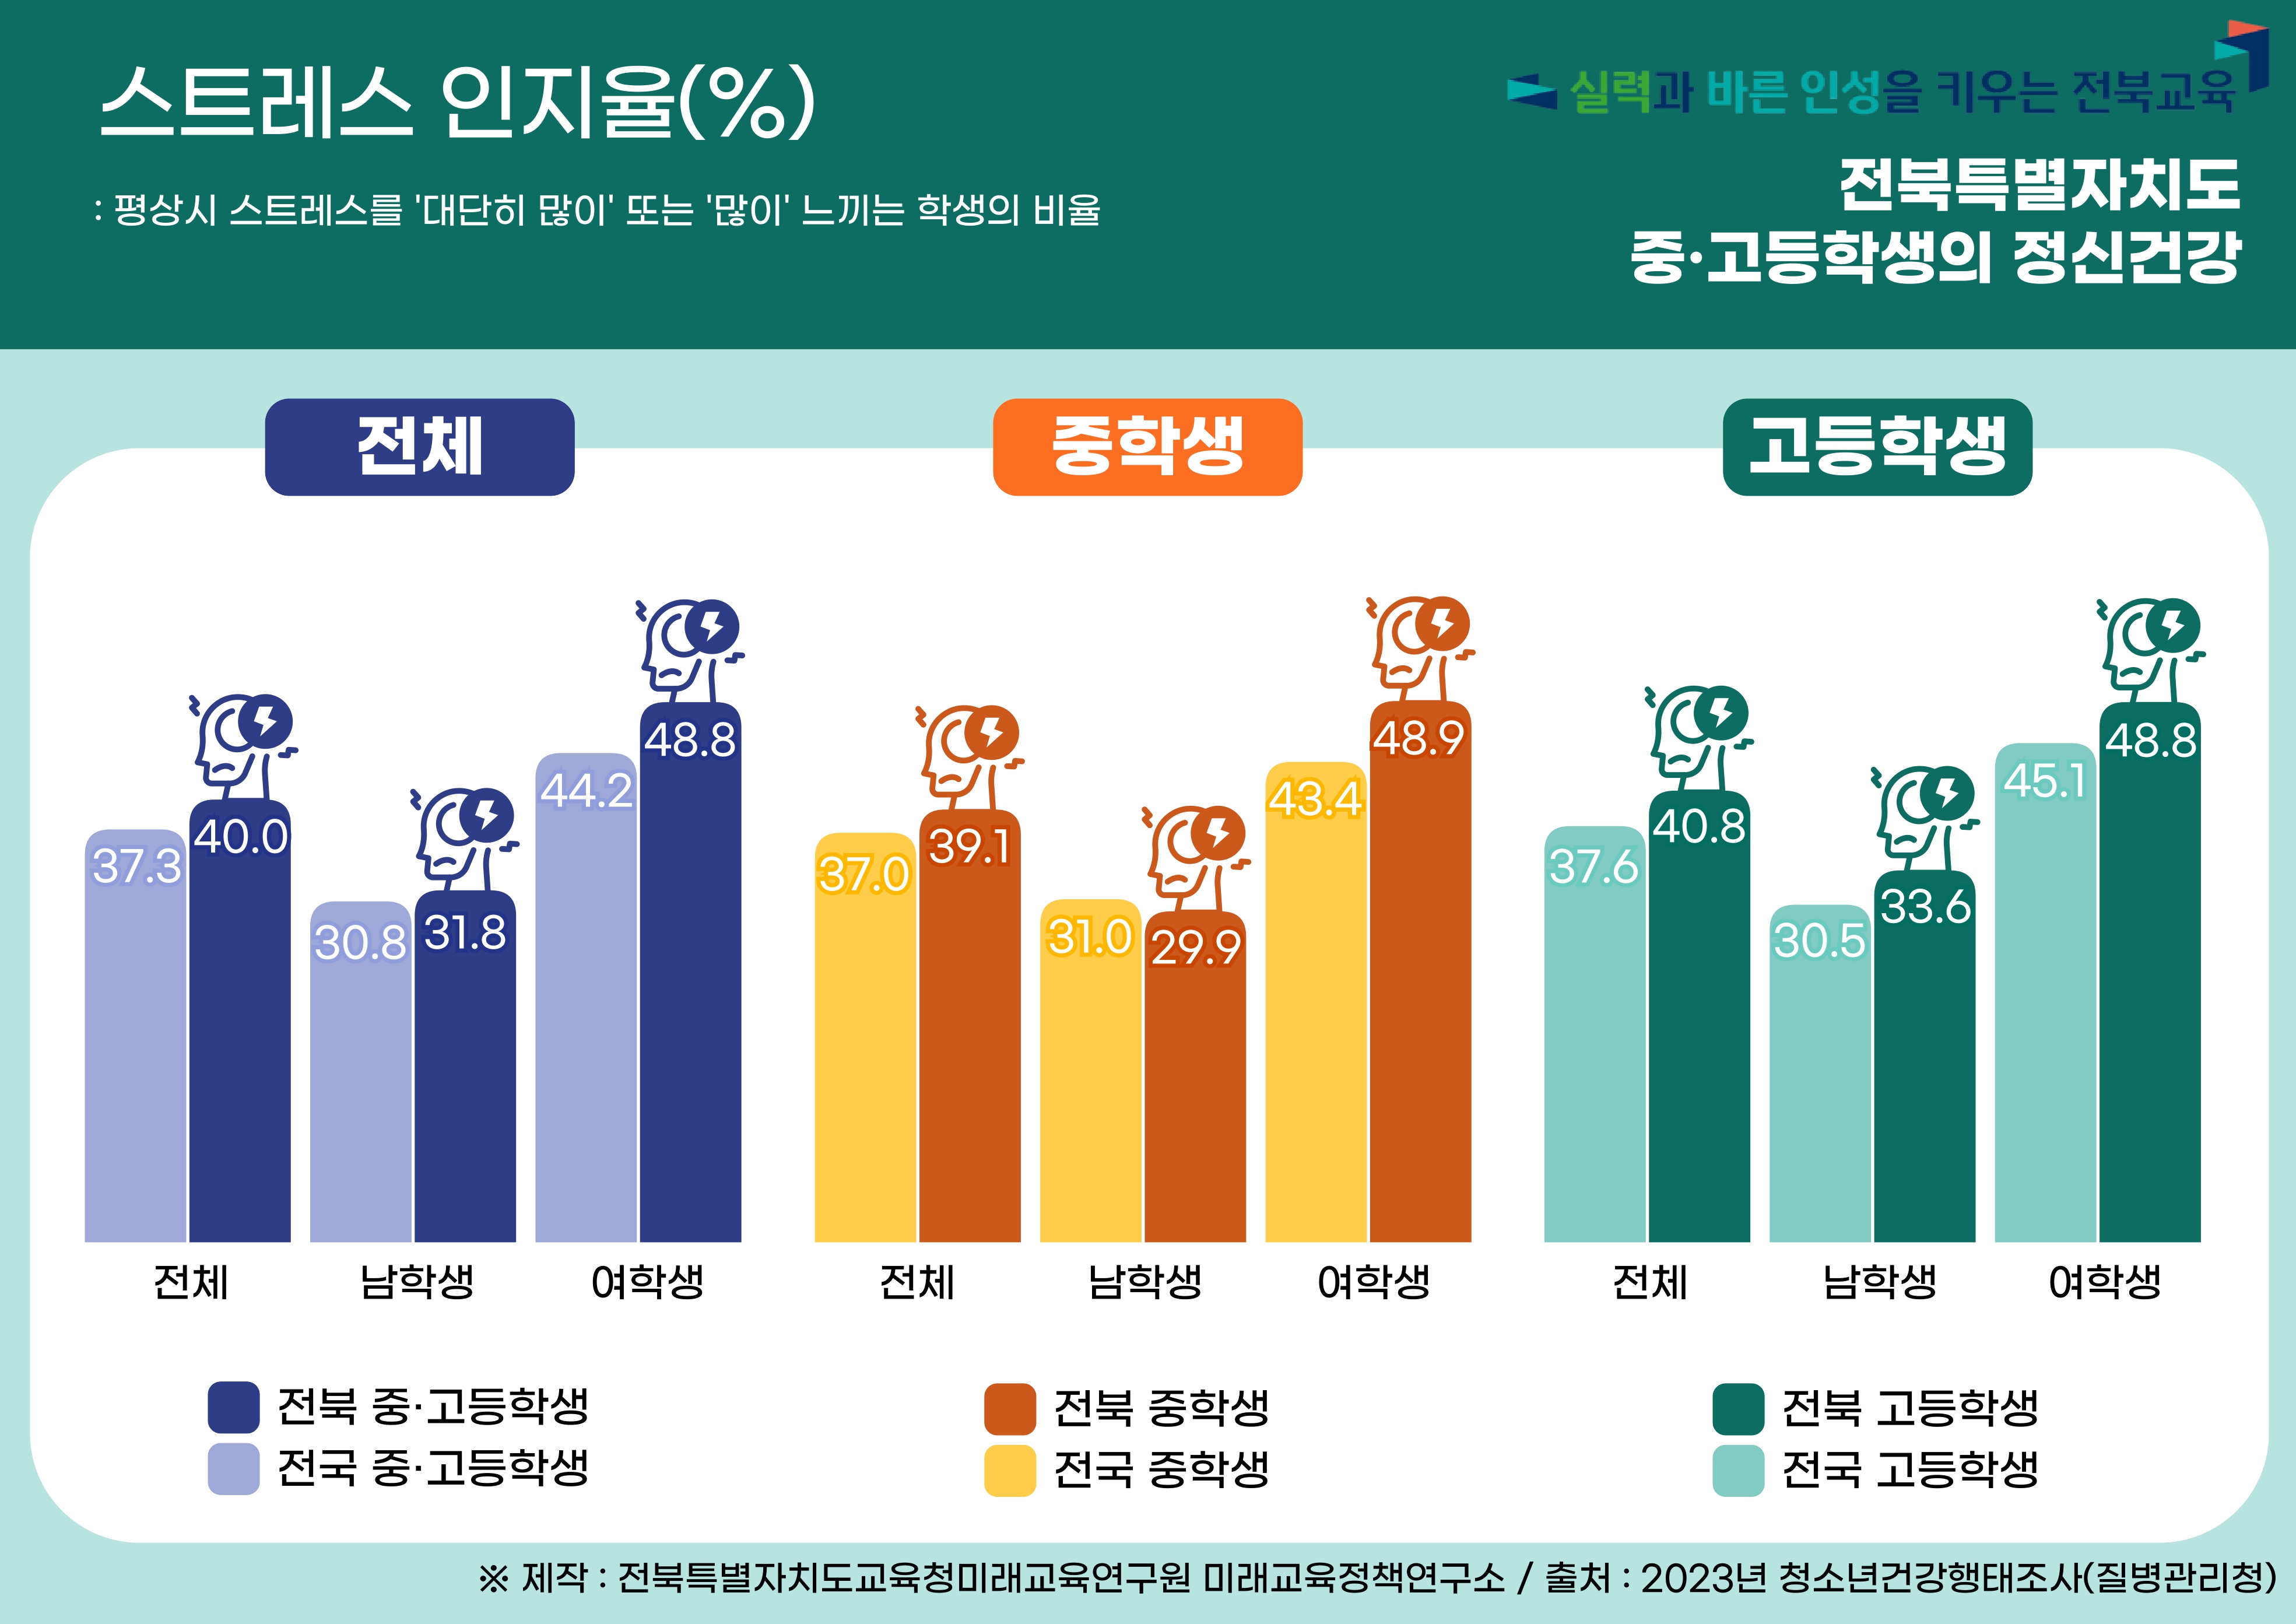 2023년 전북특별자치도 청소년 건강행태 : 정신건강1